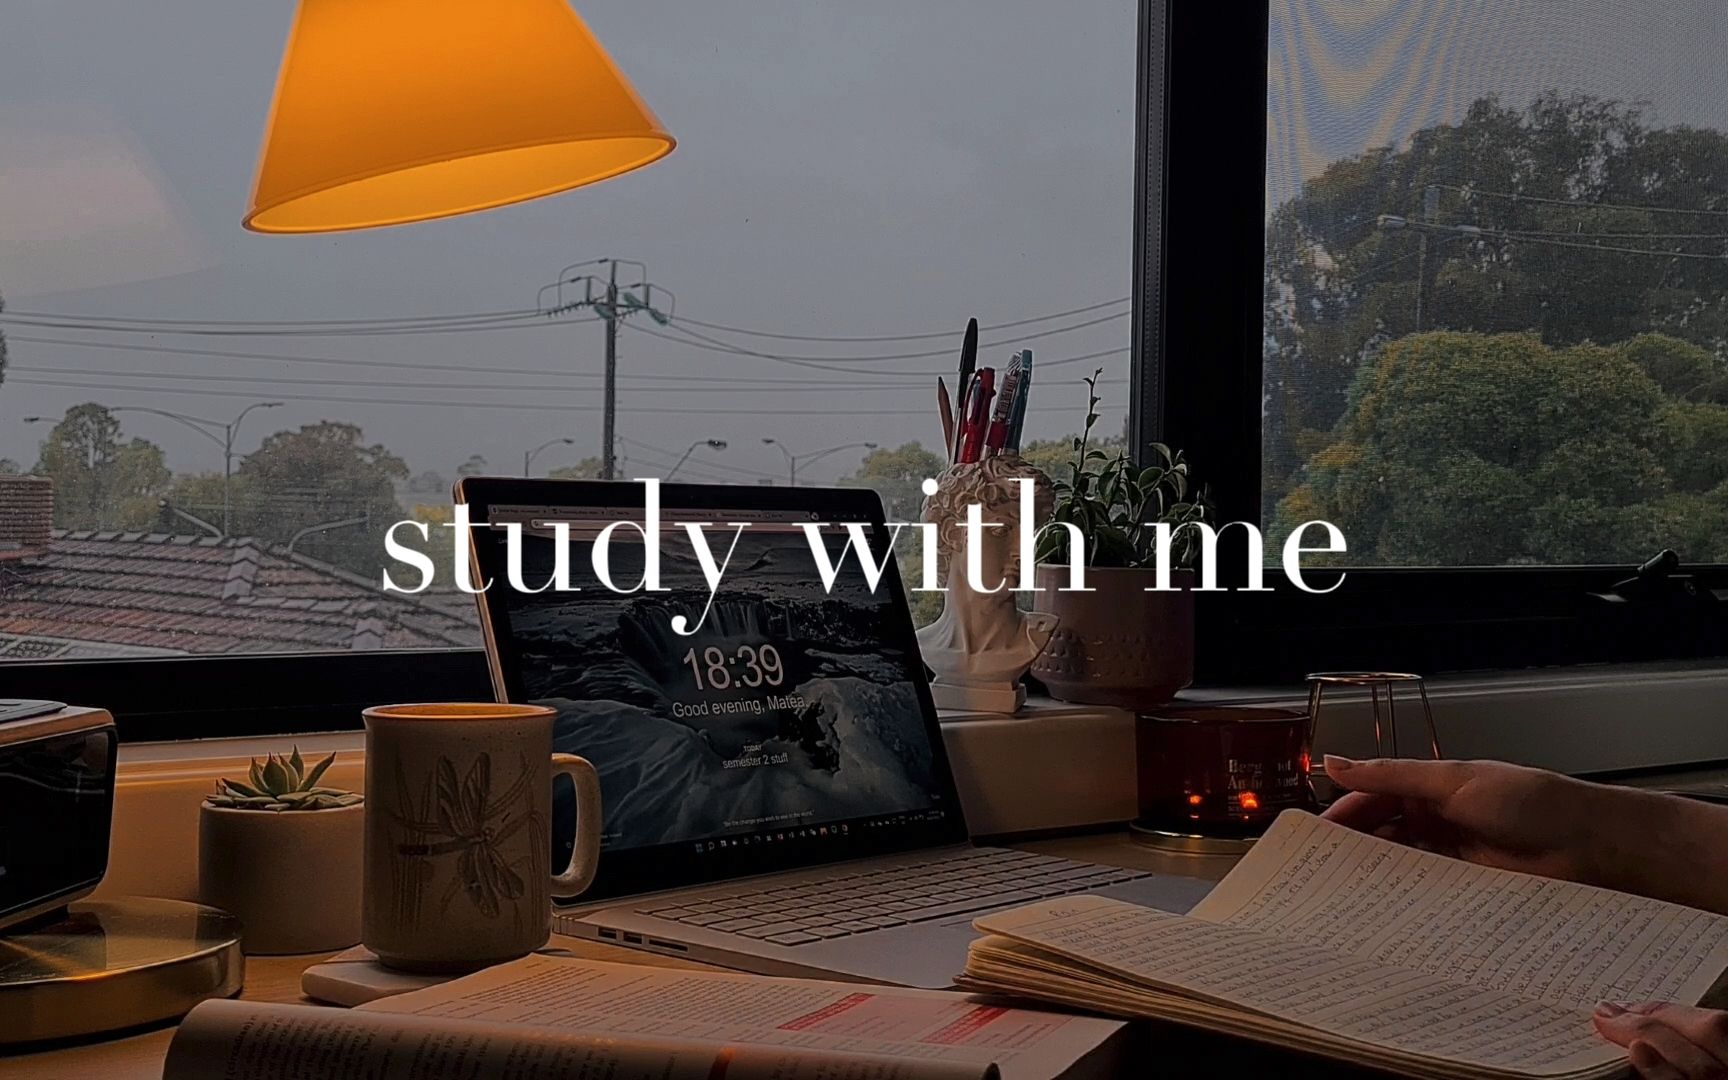 study with me | 雨天窗边自习室 | 1小时实时沉浸式陪伴学习 | 雨声背景音 | 下雨天的高效独处时刻 | 治愈白噪音